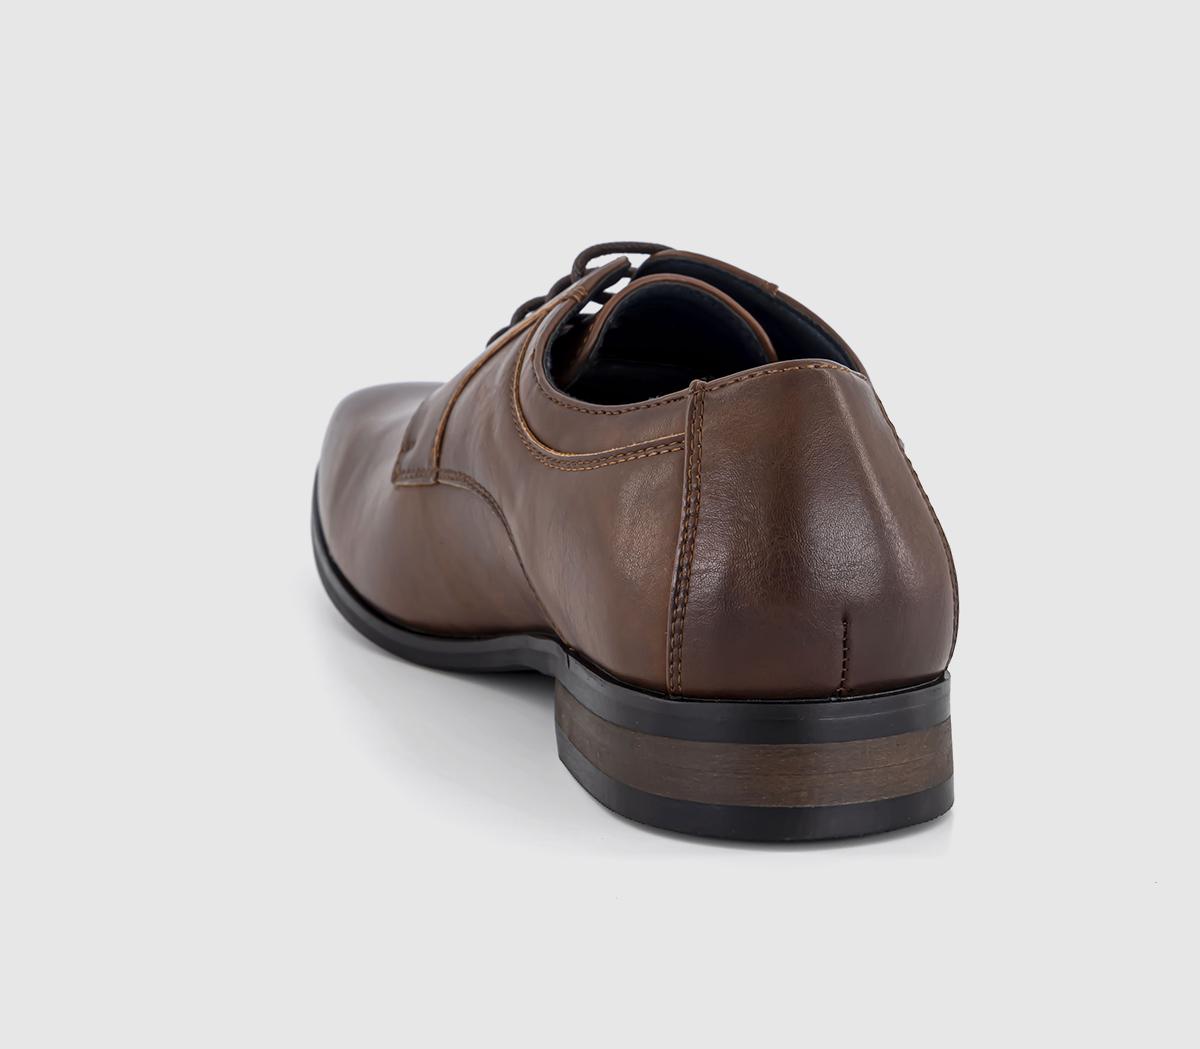 OFFICE Modena Plain Toe Derby Shoes Brown - Men’s Smart Shoes